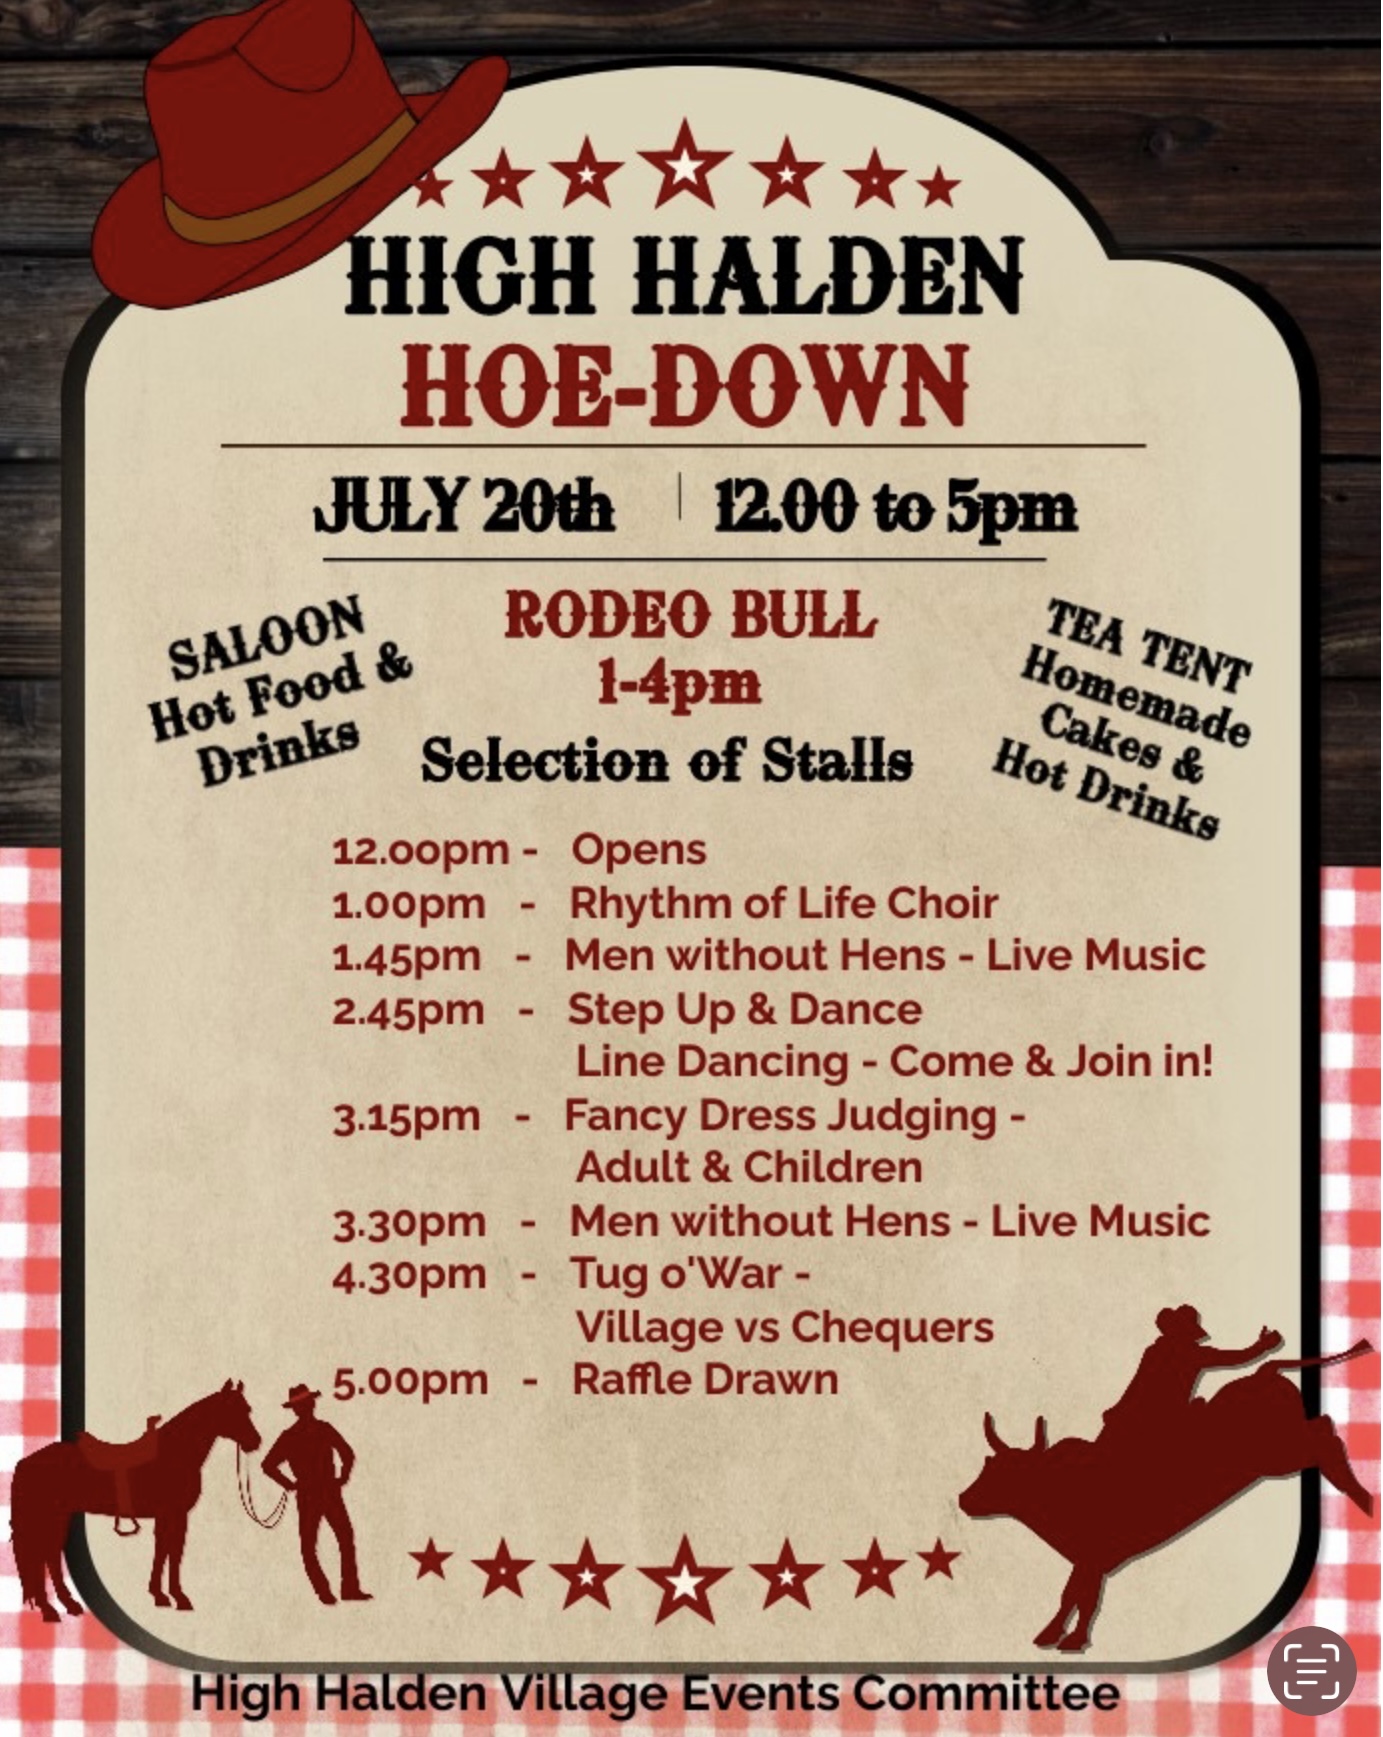 High Halden Village Village Events and Dates